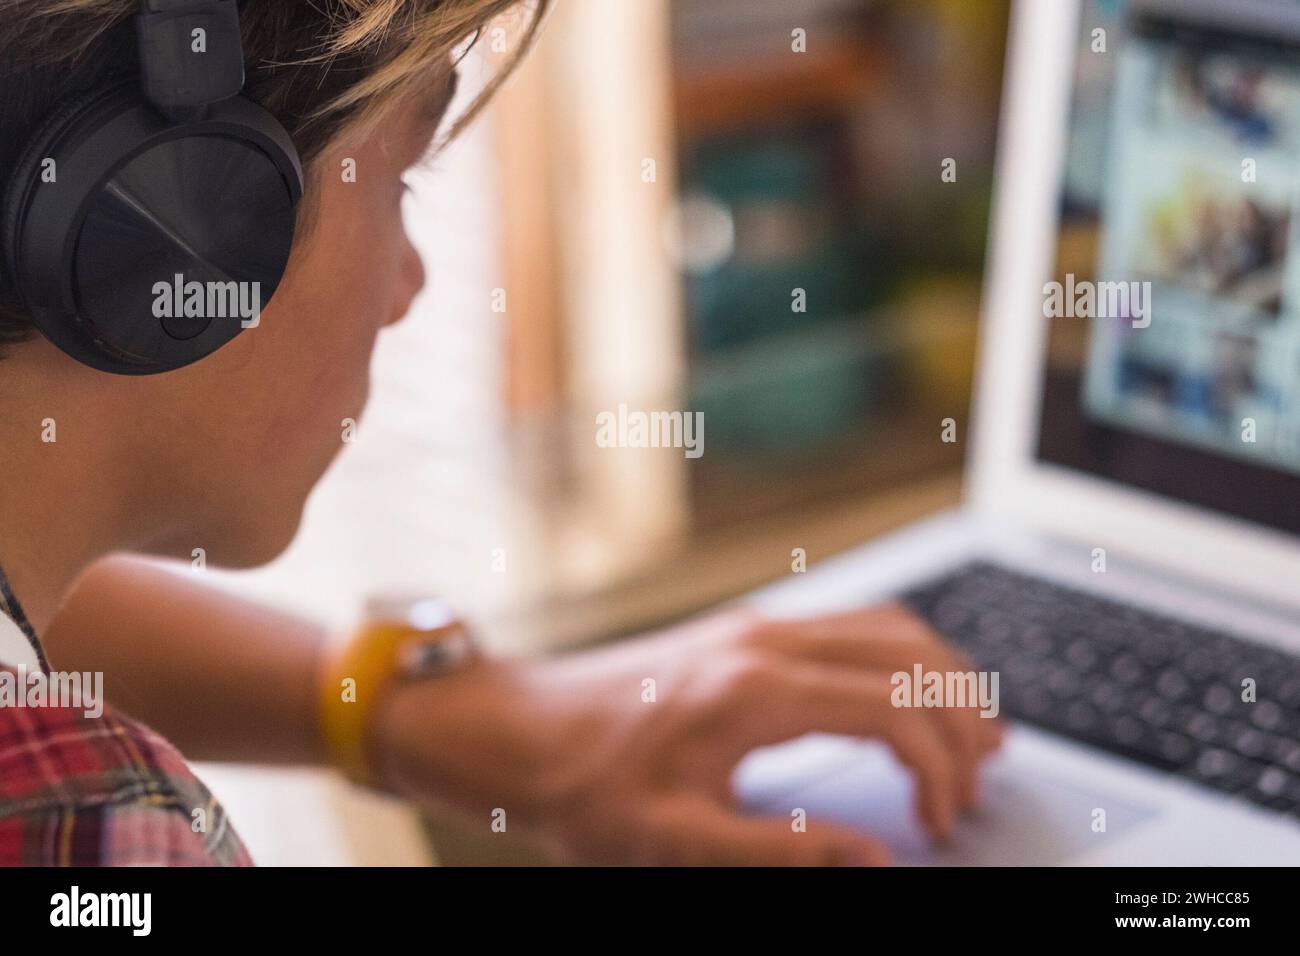 seul adolescent caucasien se concentrant pour ses devoirs avec son ordinateur portable - mec millénaire travaille à la maison - enfant d'intérieur jouant à des jeux vidéo Banque D'Images